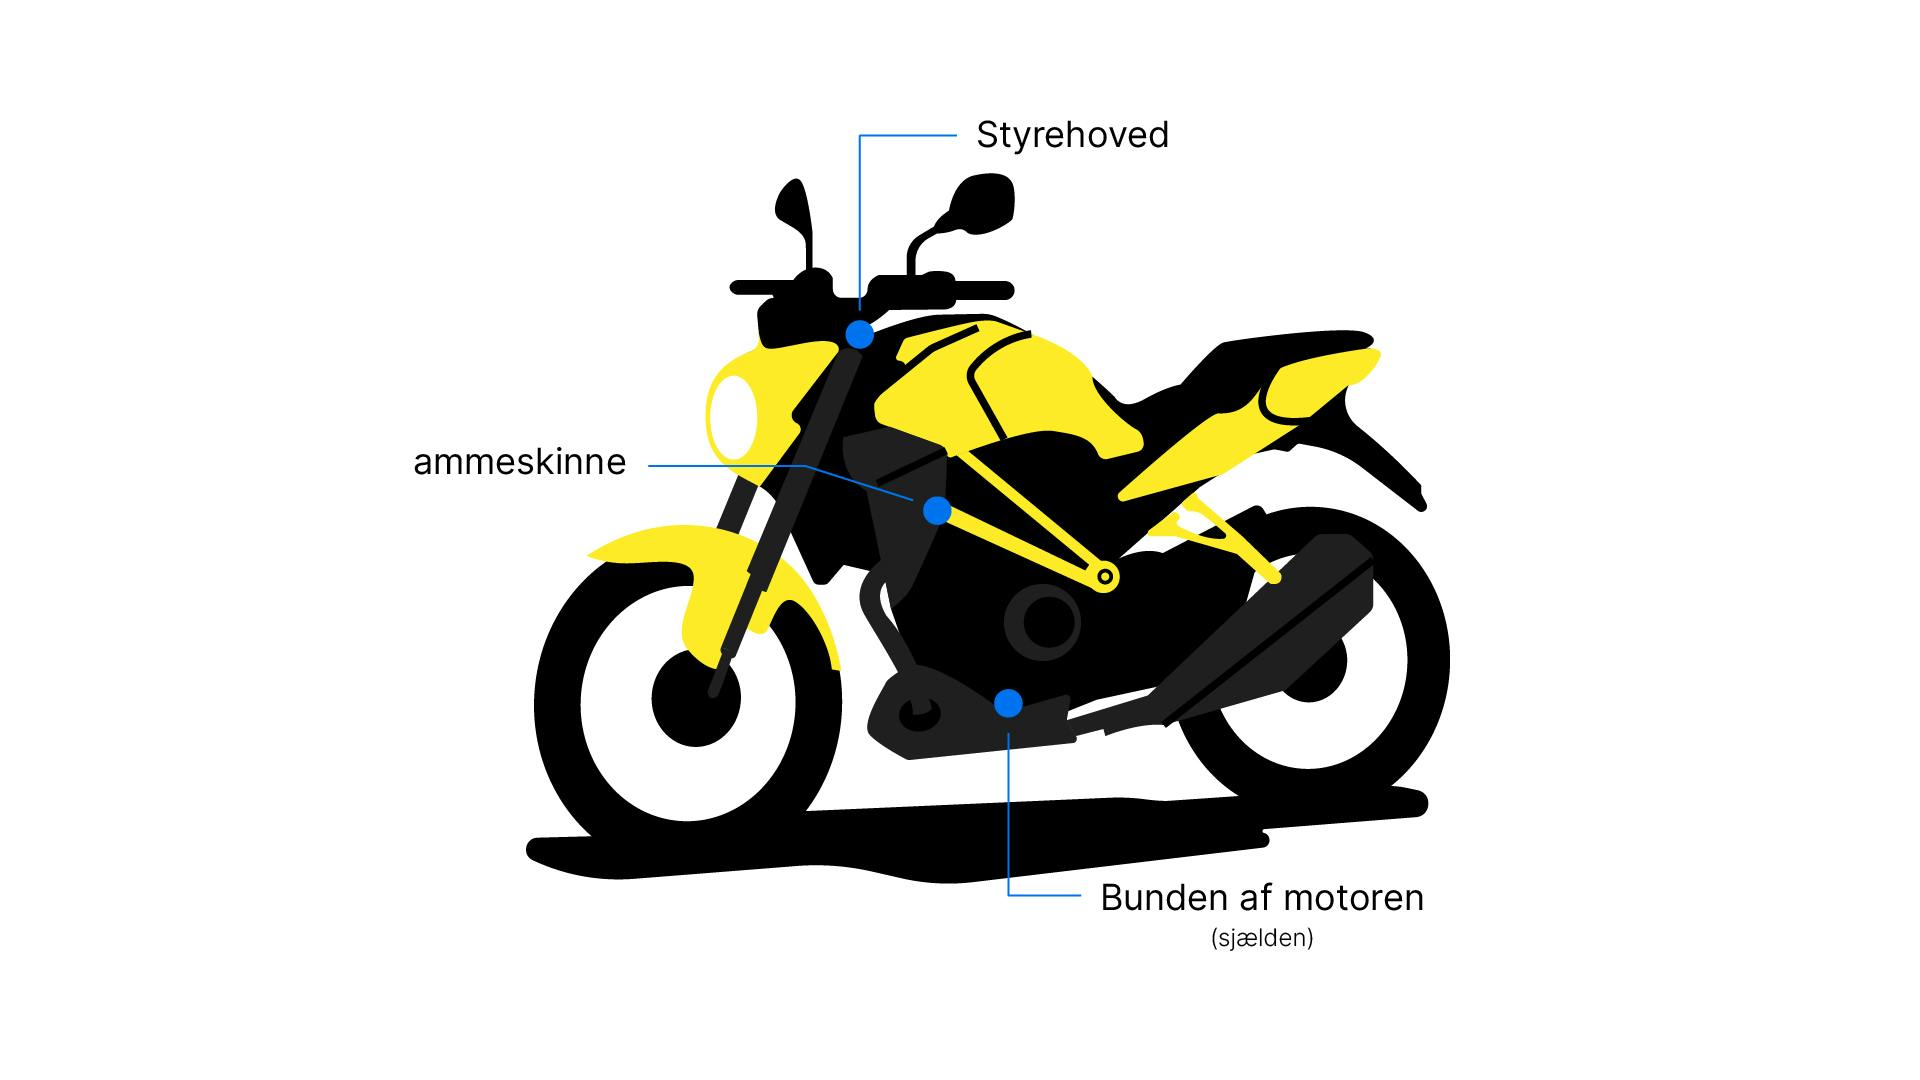 Placeringen af VIN-numre på motorcykler